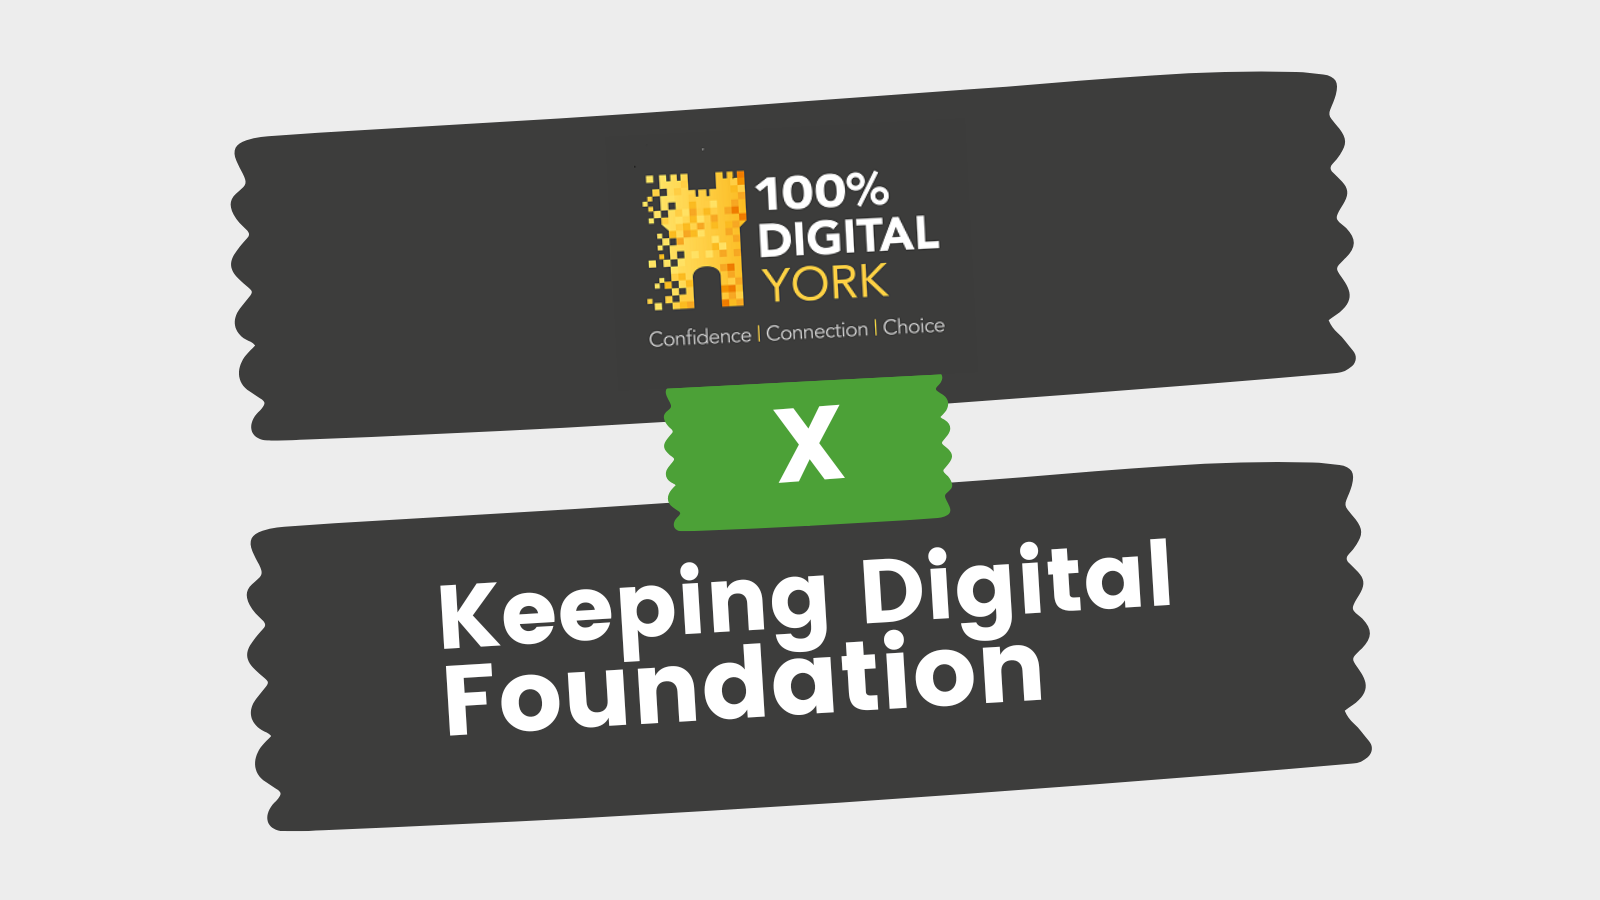 100% Digital York and Keeping Digital Foundation logo